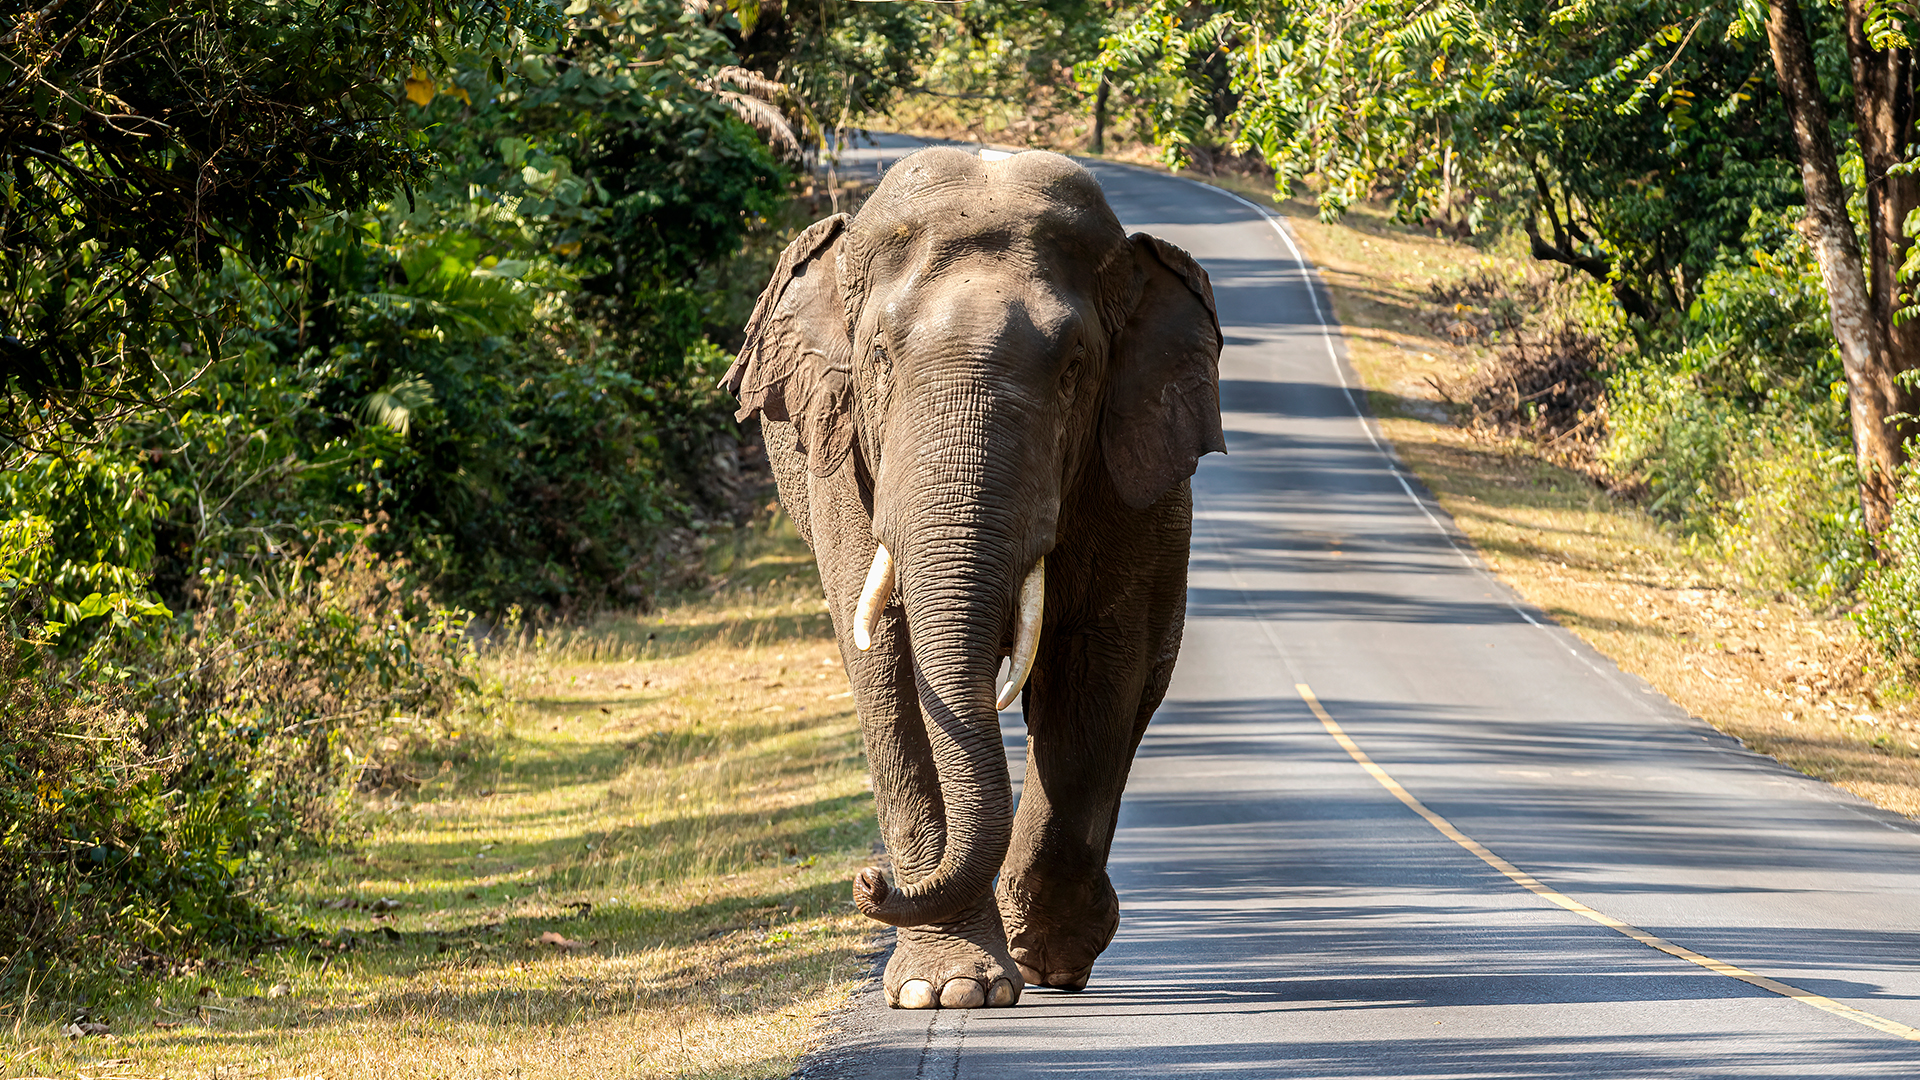 فيل آسيوي يمشي على طريق خاو في حديقة ياي الوطنية ، تايلاند.